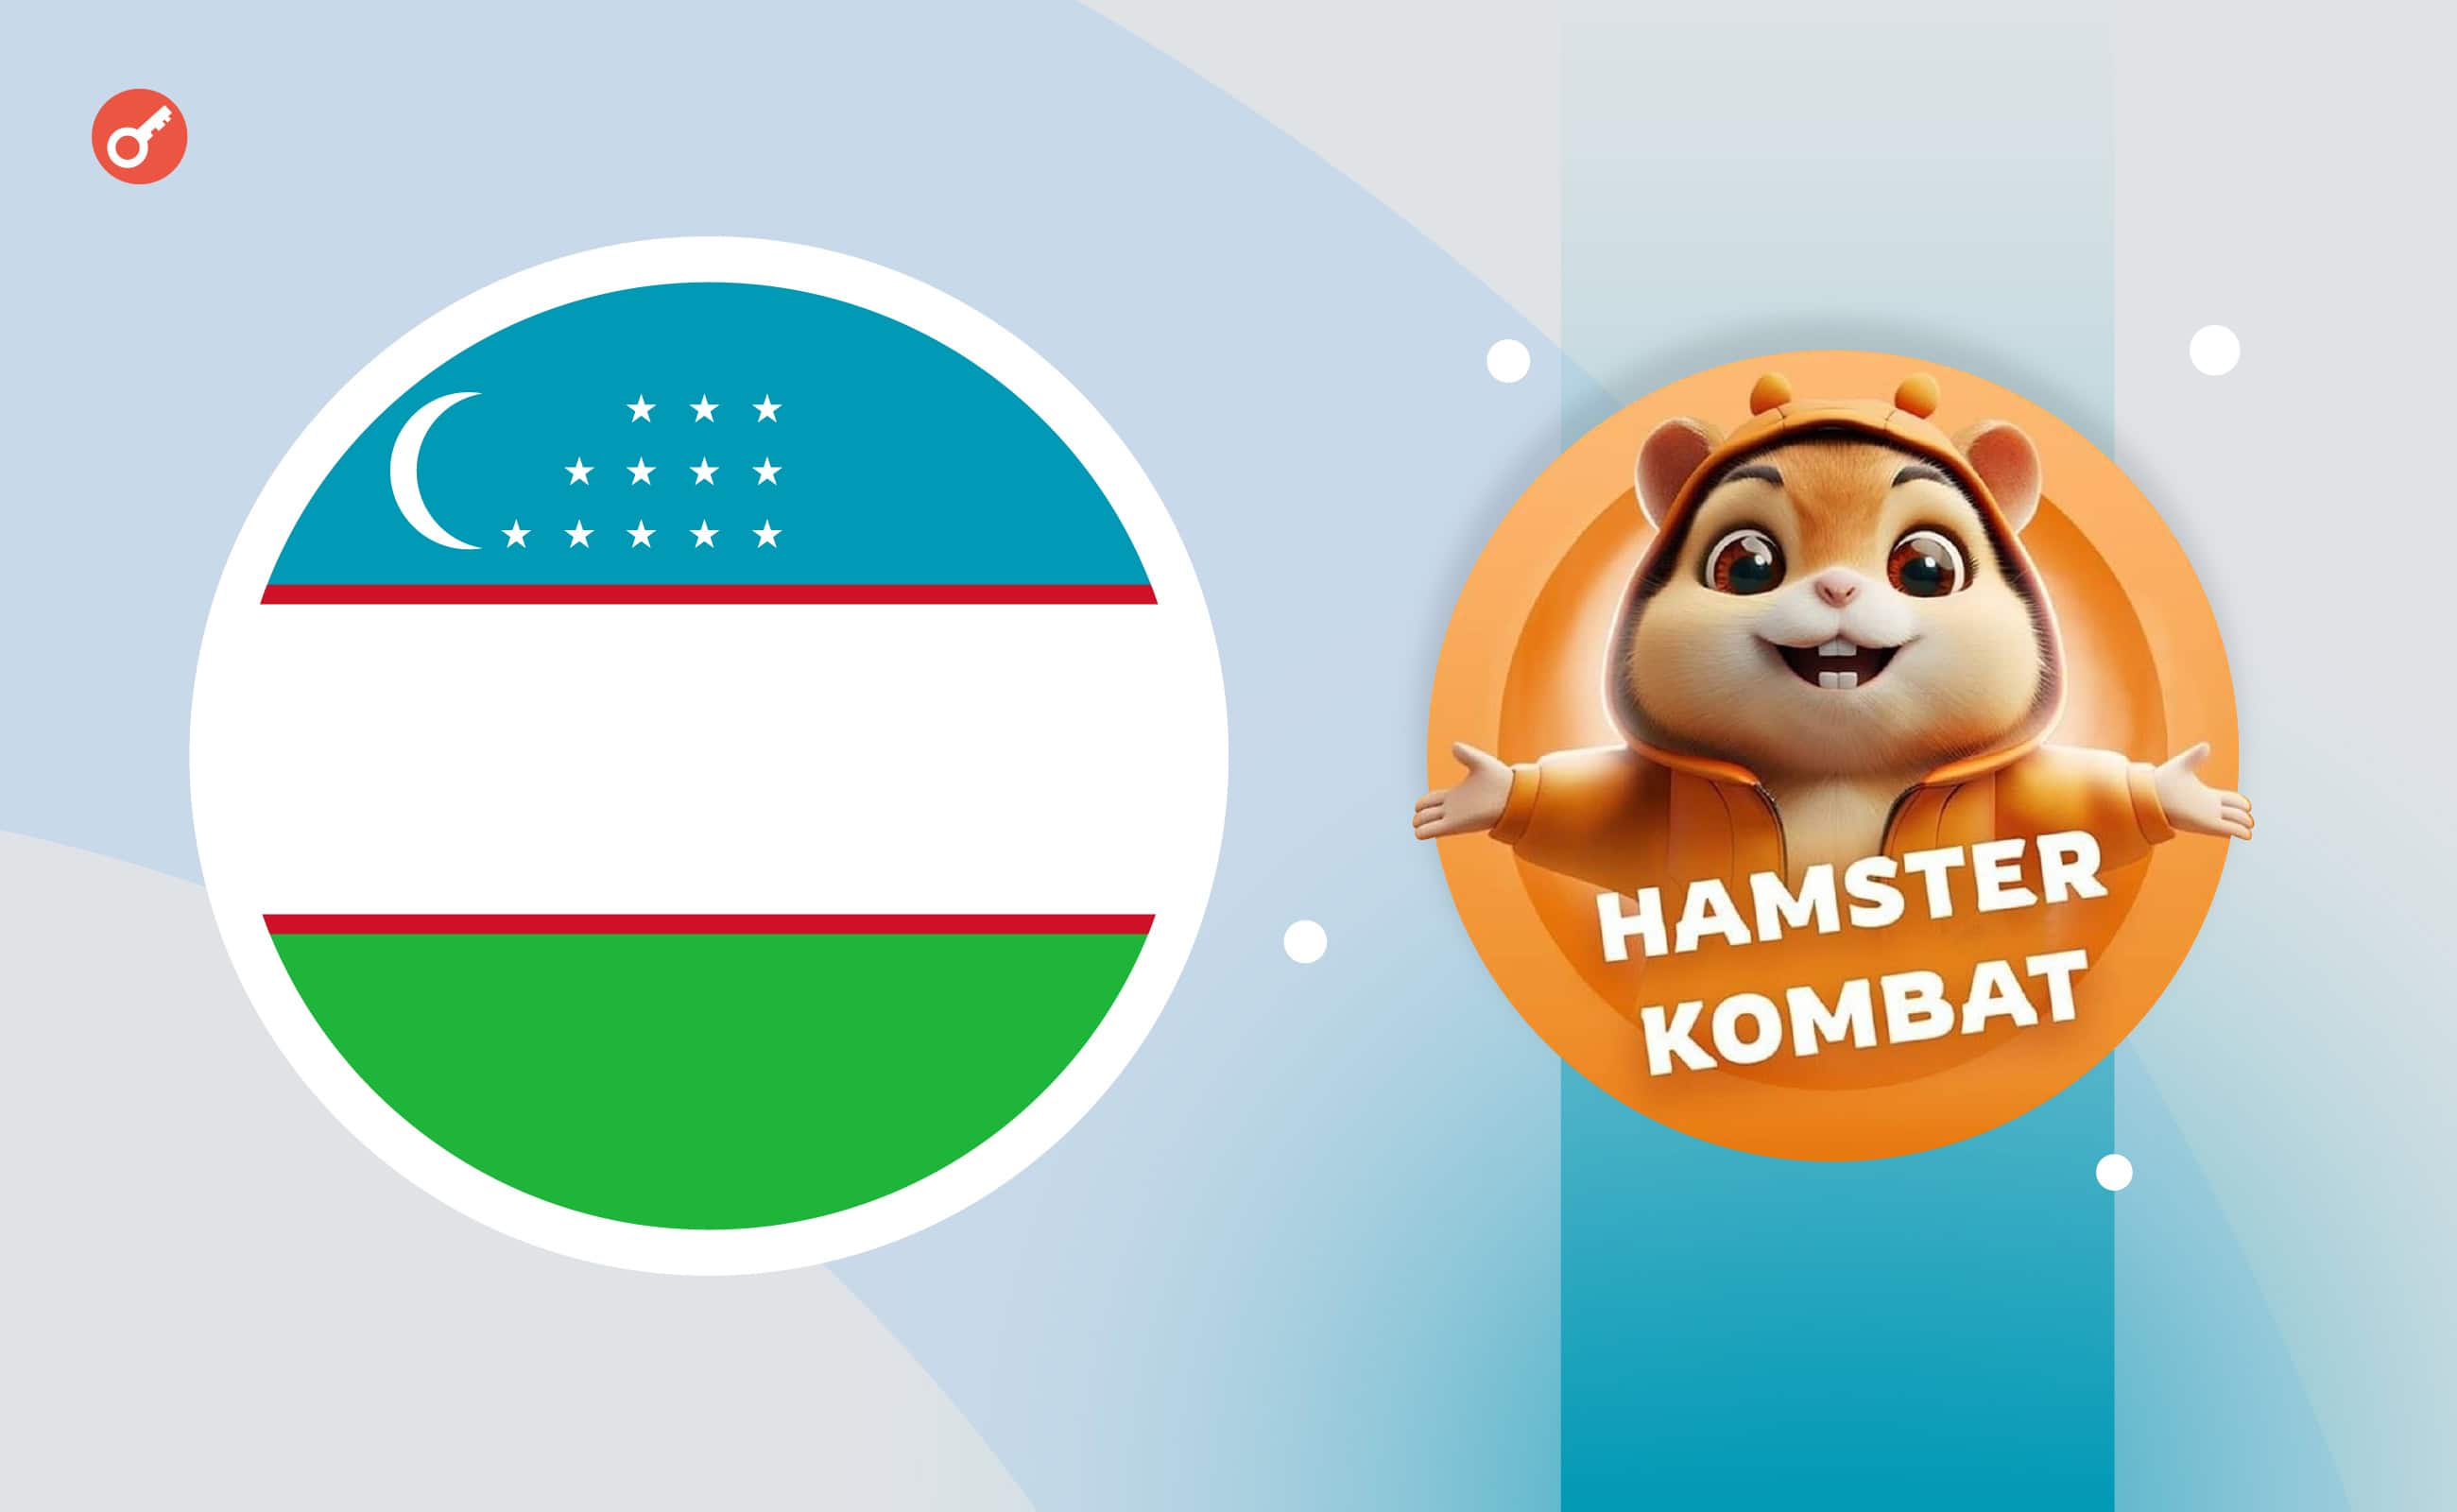 ЗМІ: в Узбекистані гравців Hamster Kombat саджатимуть у в’язницю. Головний колаж новини.